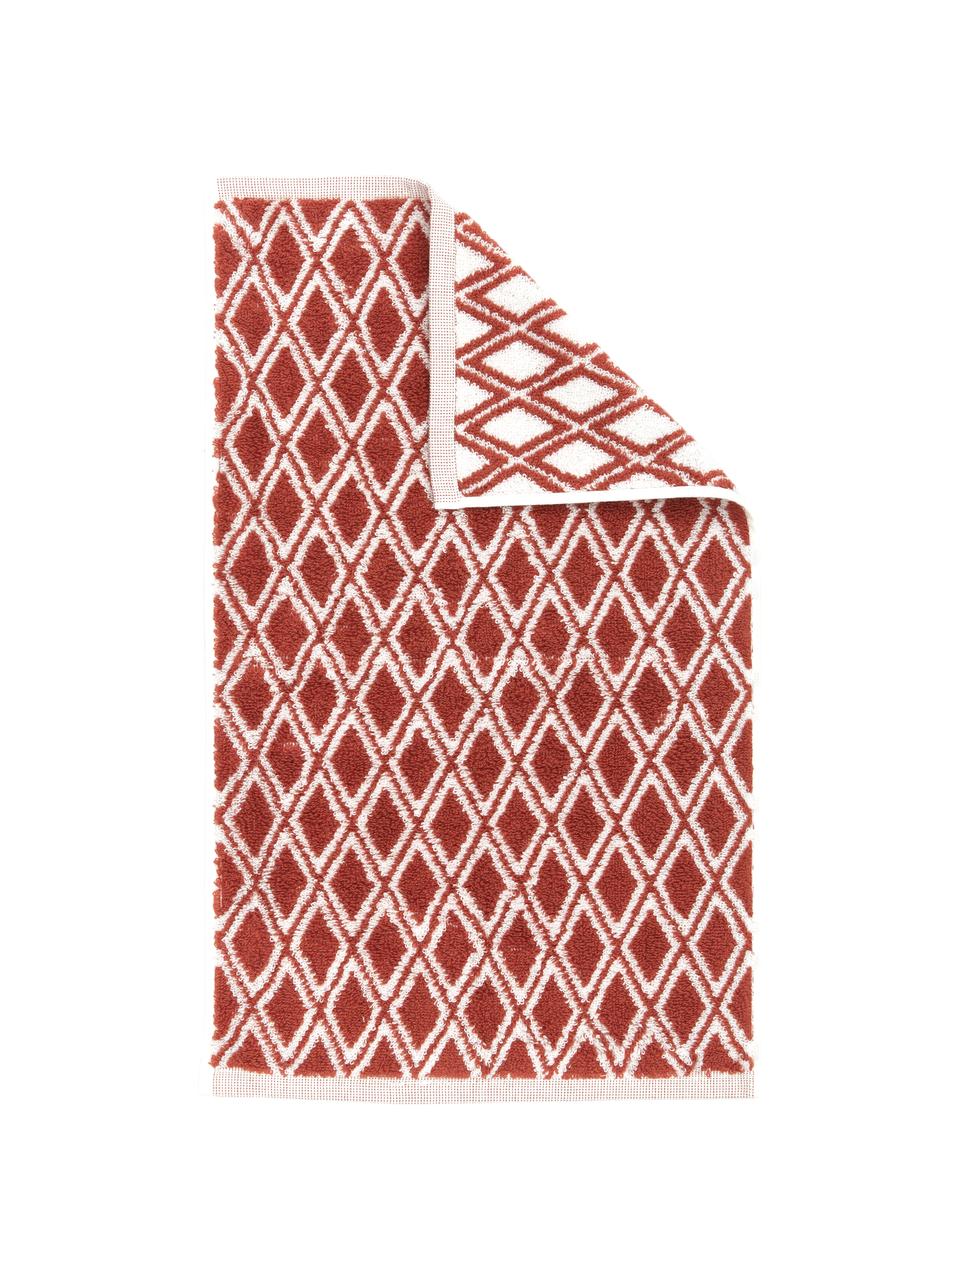 Wende-Handtuch Ava mit grafischem Muster, 100% Baumwolle, mittelschwere Qualität 550 g/m², Terrakotta, Cremeweiss, Gästehandtuch